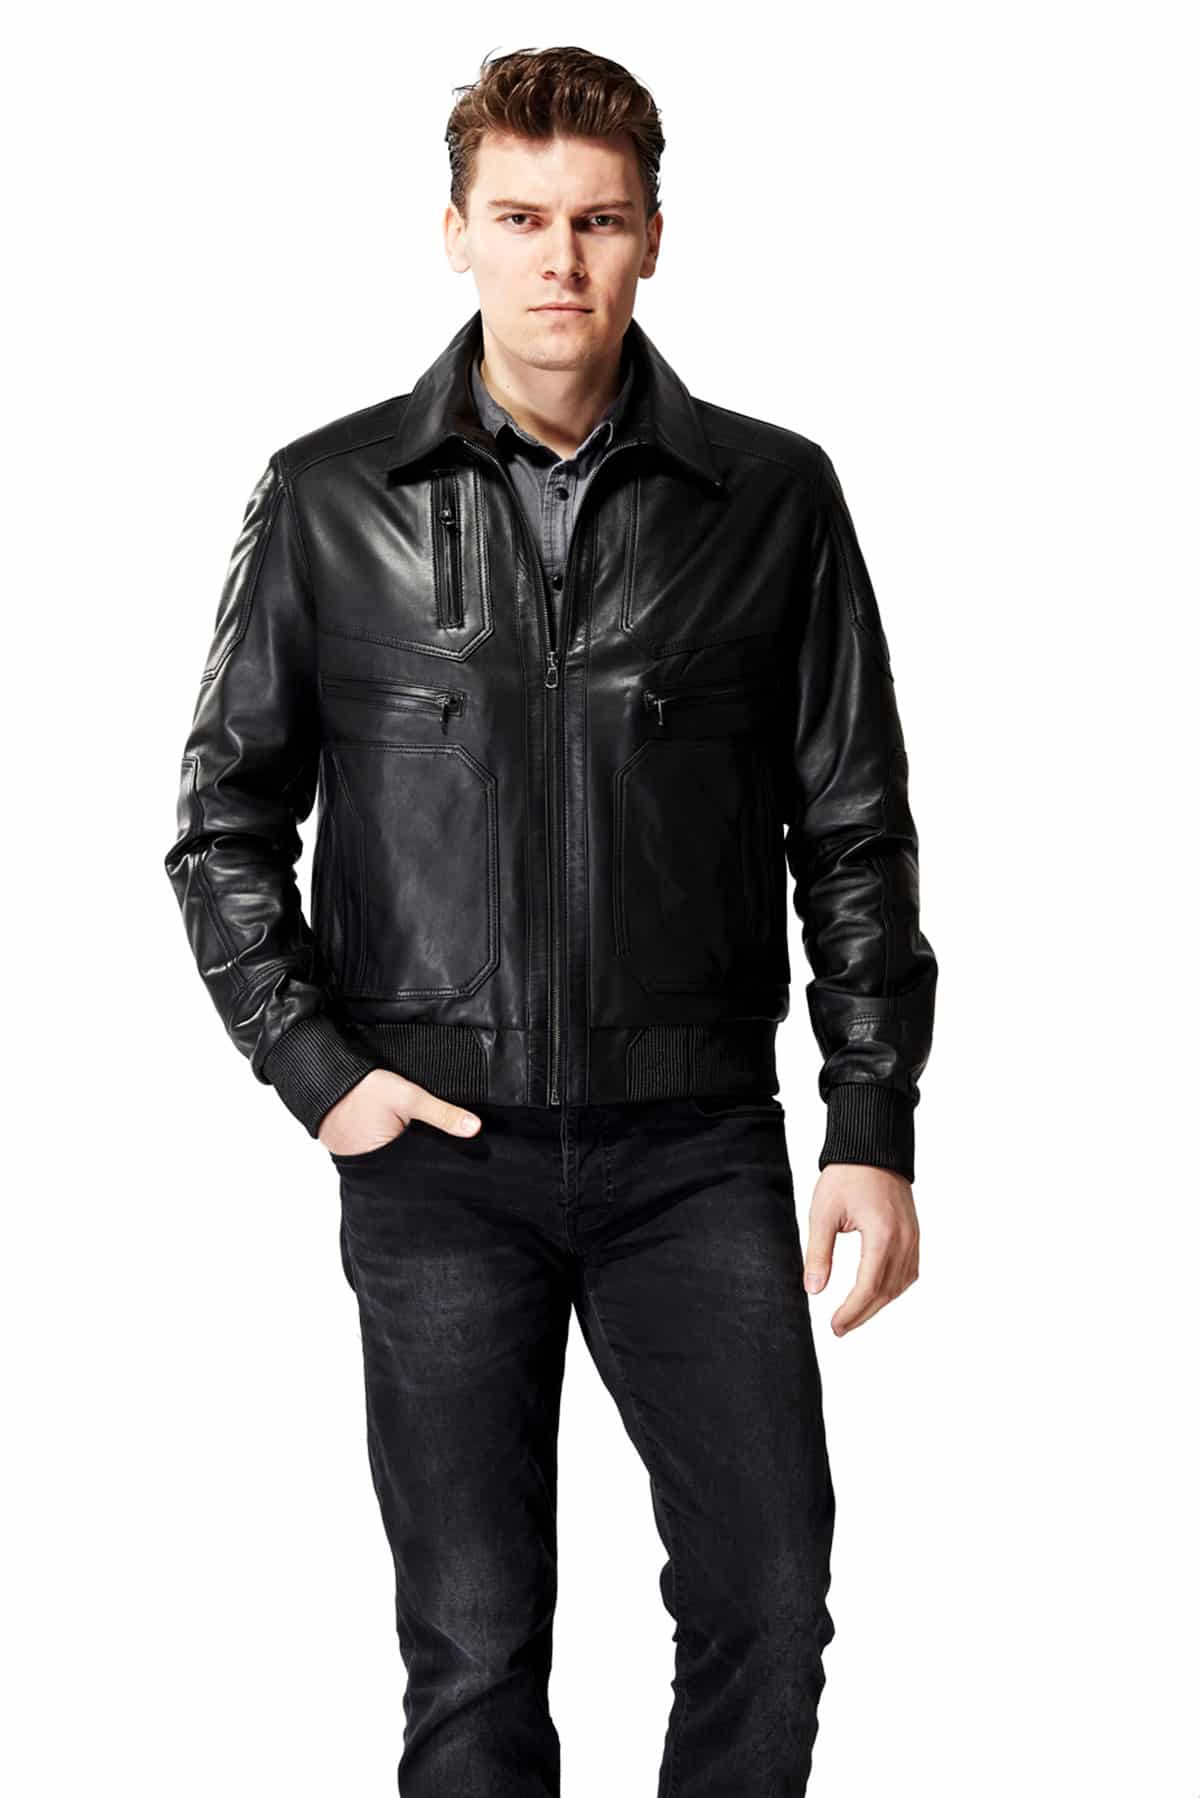 Mystical Black Leather Jacket | The Jacket Maker